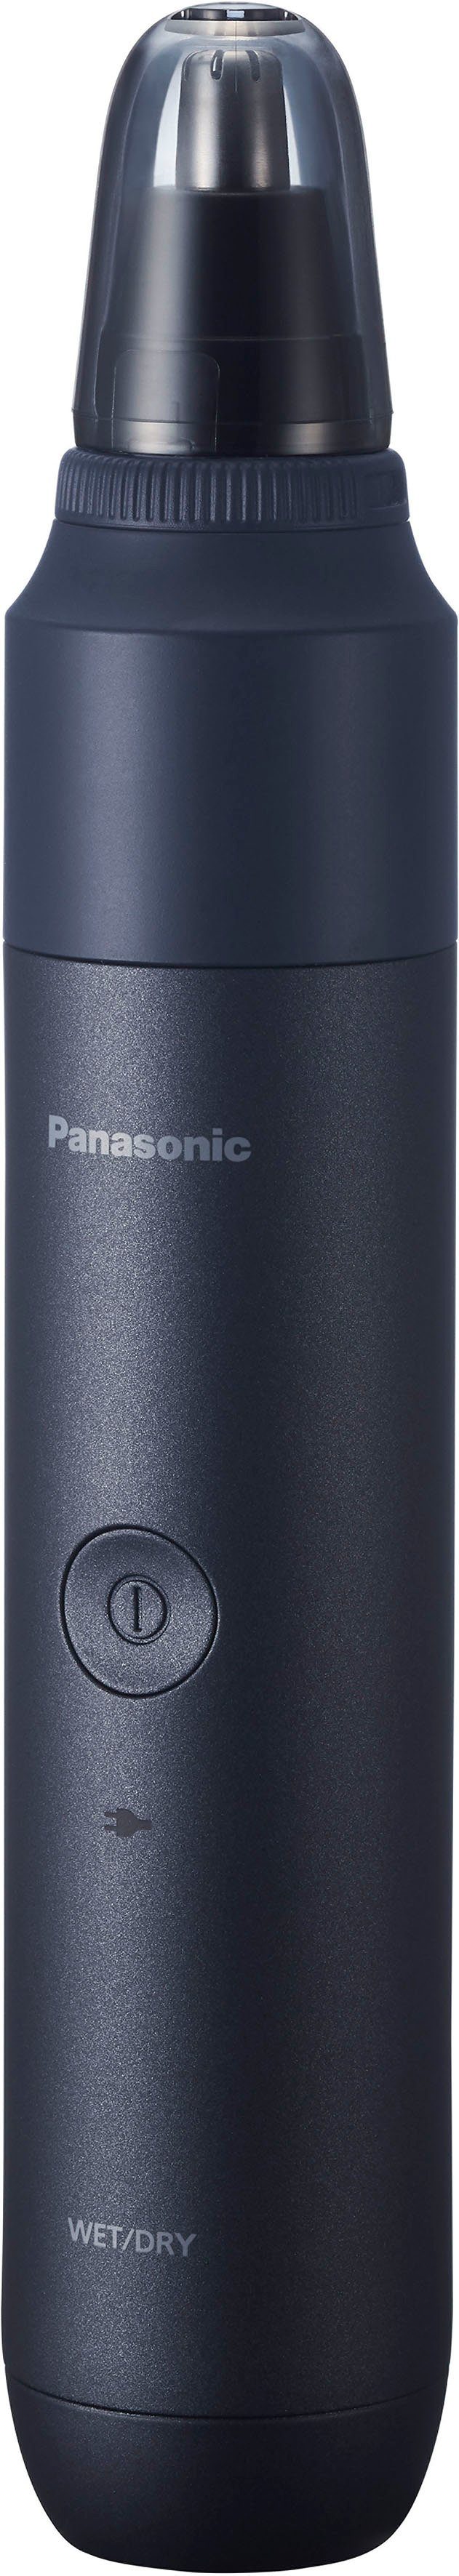 Aufsatz Nasenhaarschneider Multishape und Ohrhaartrimmeraufsatz Panasonic Nasen-